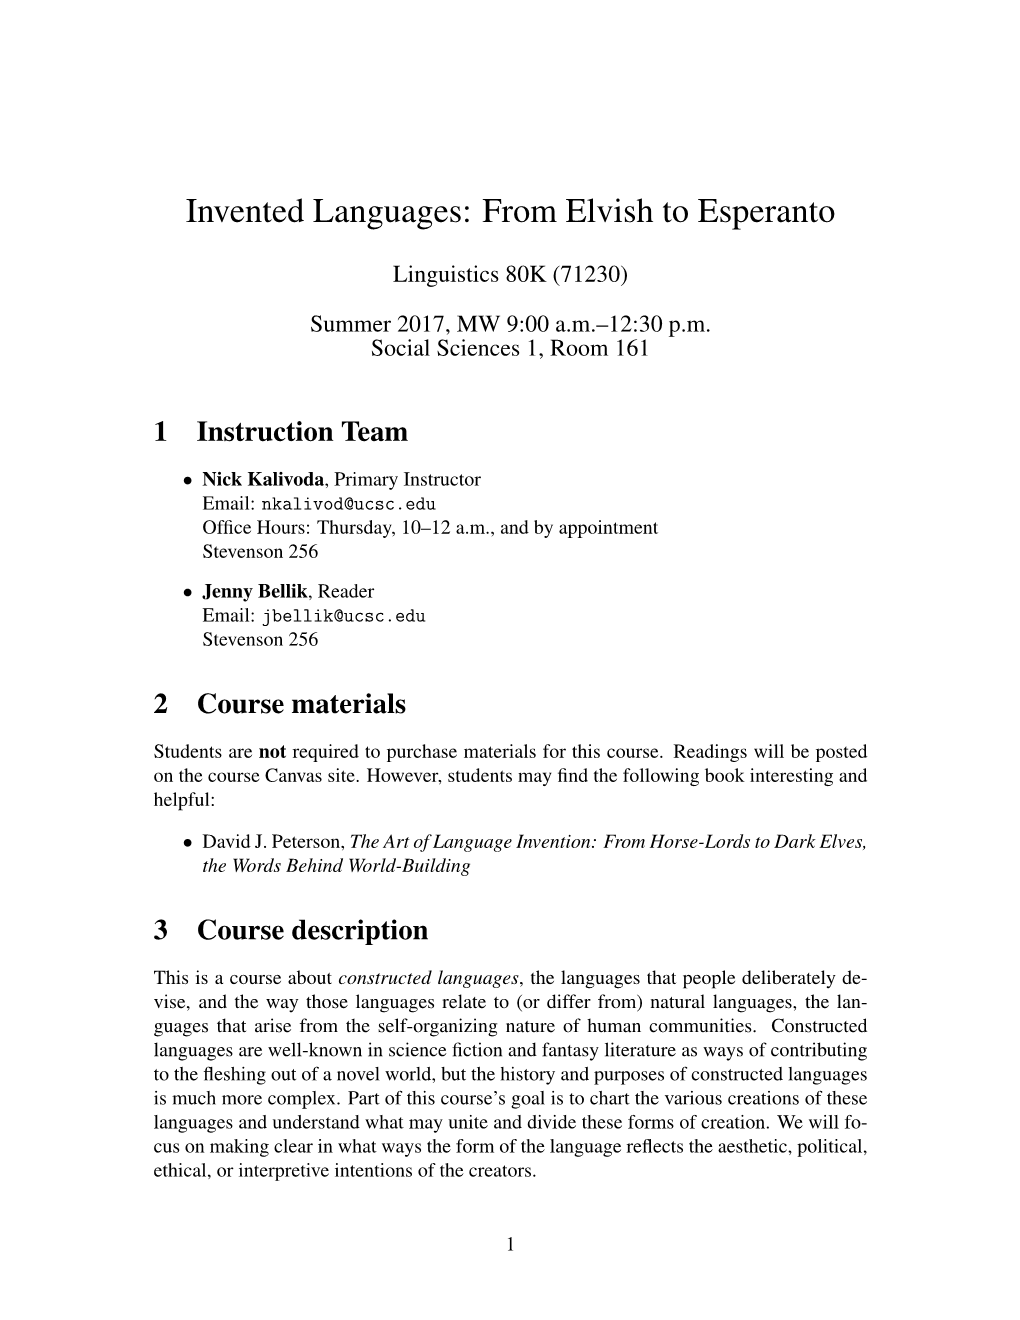 Invented Languages: from Elvish to Esperanto